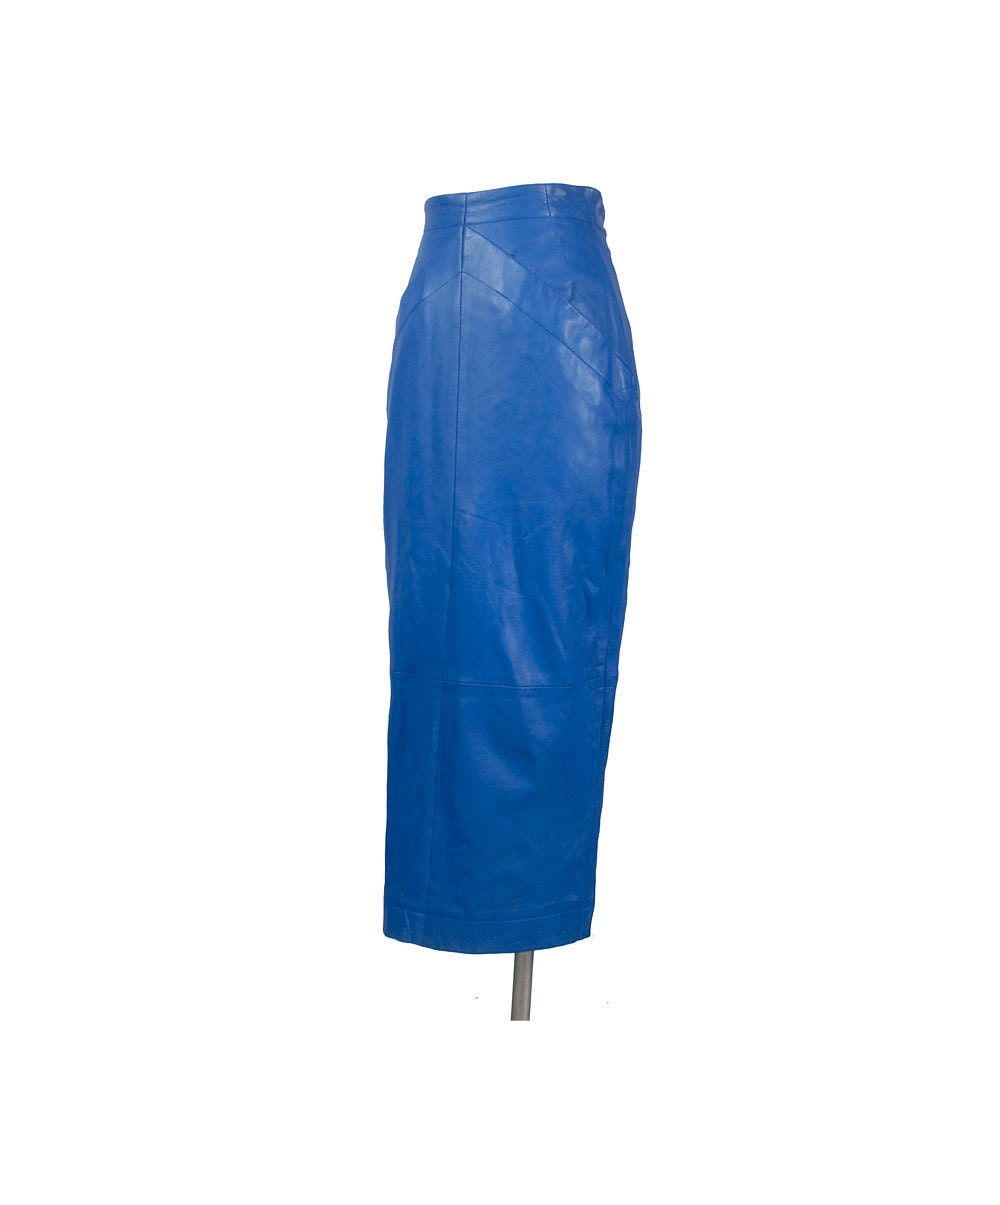 Vintage 80s Leather Skirt Blue Leather Skirt Hobble Skirt